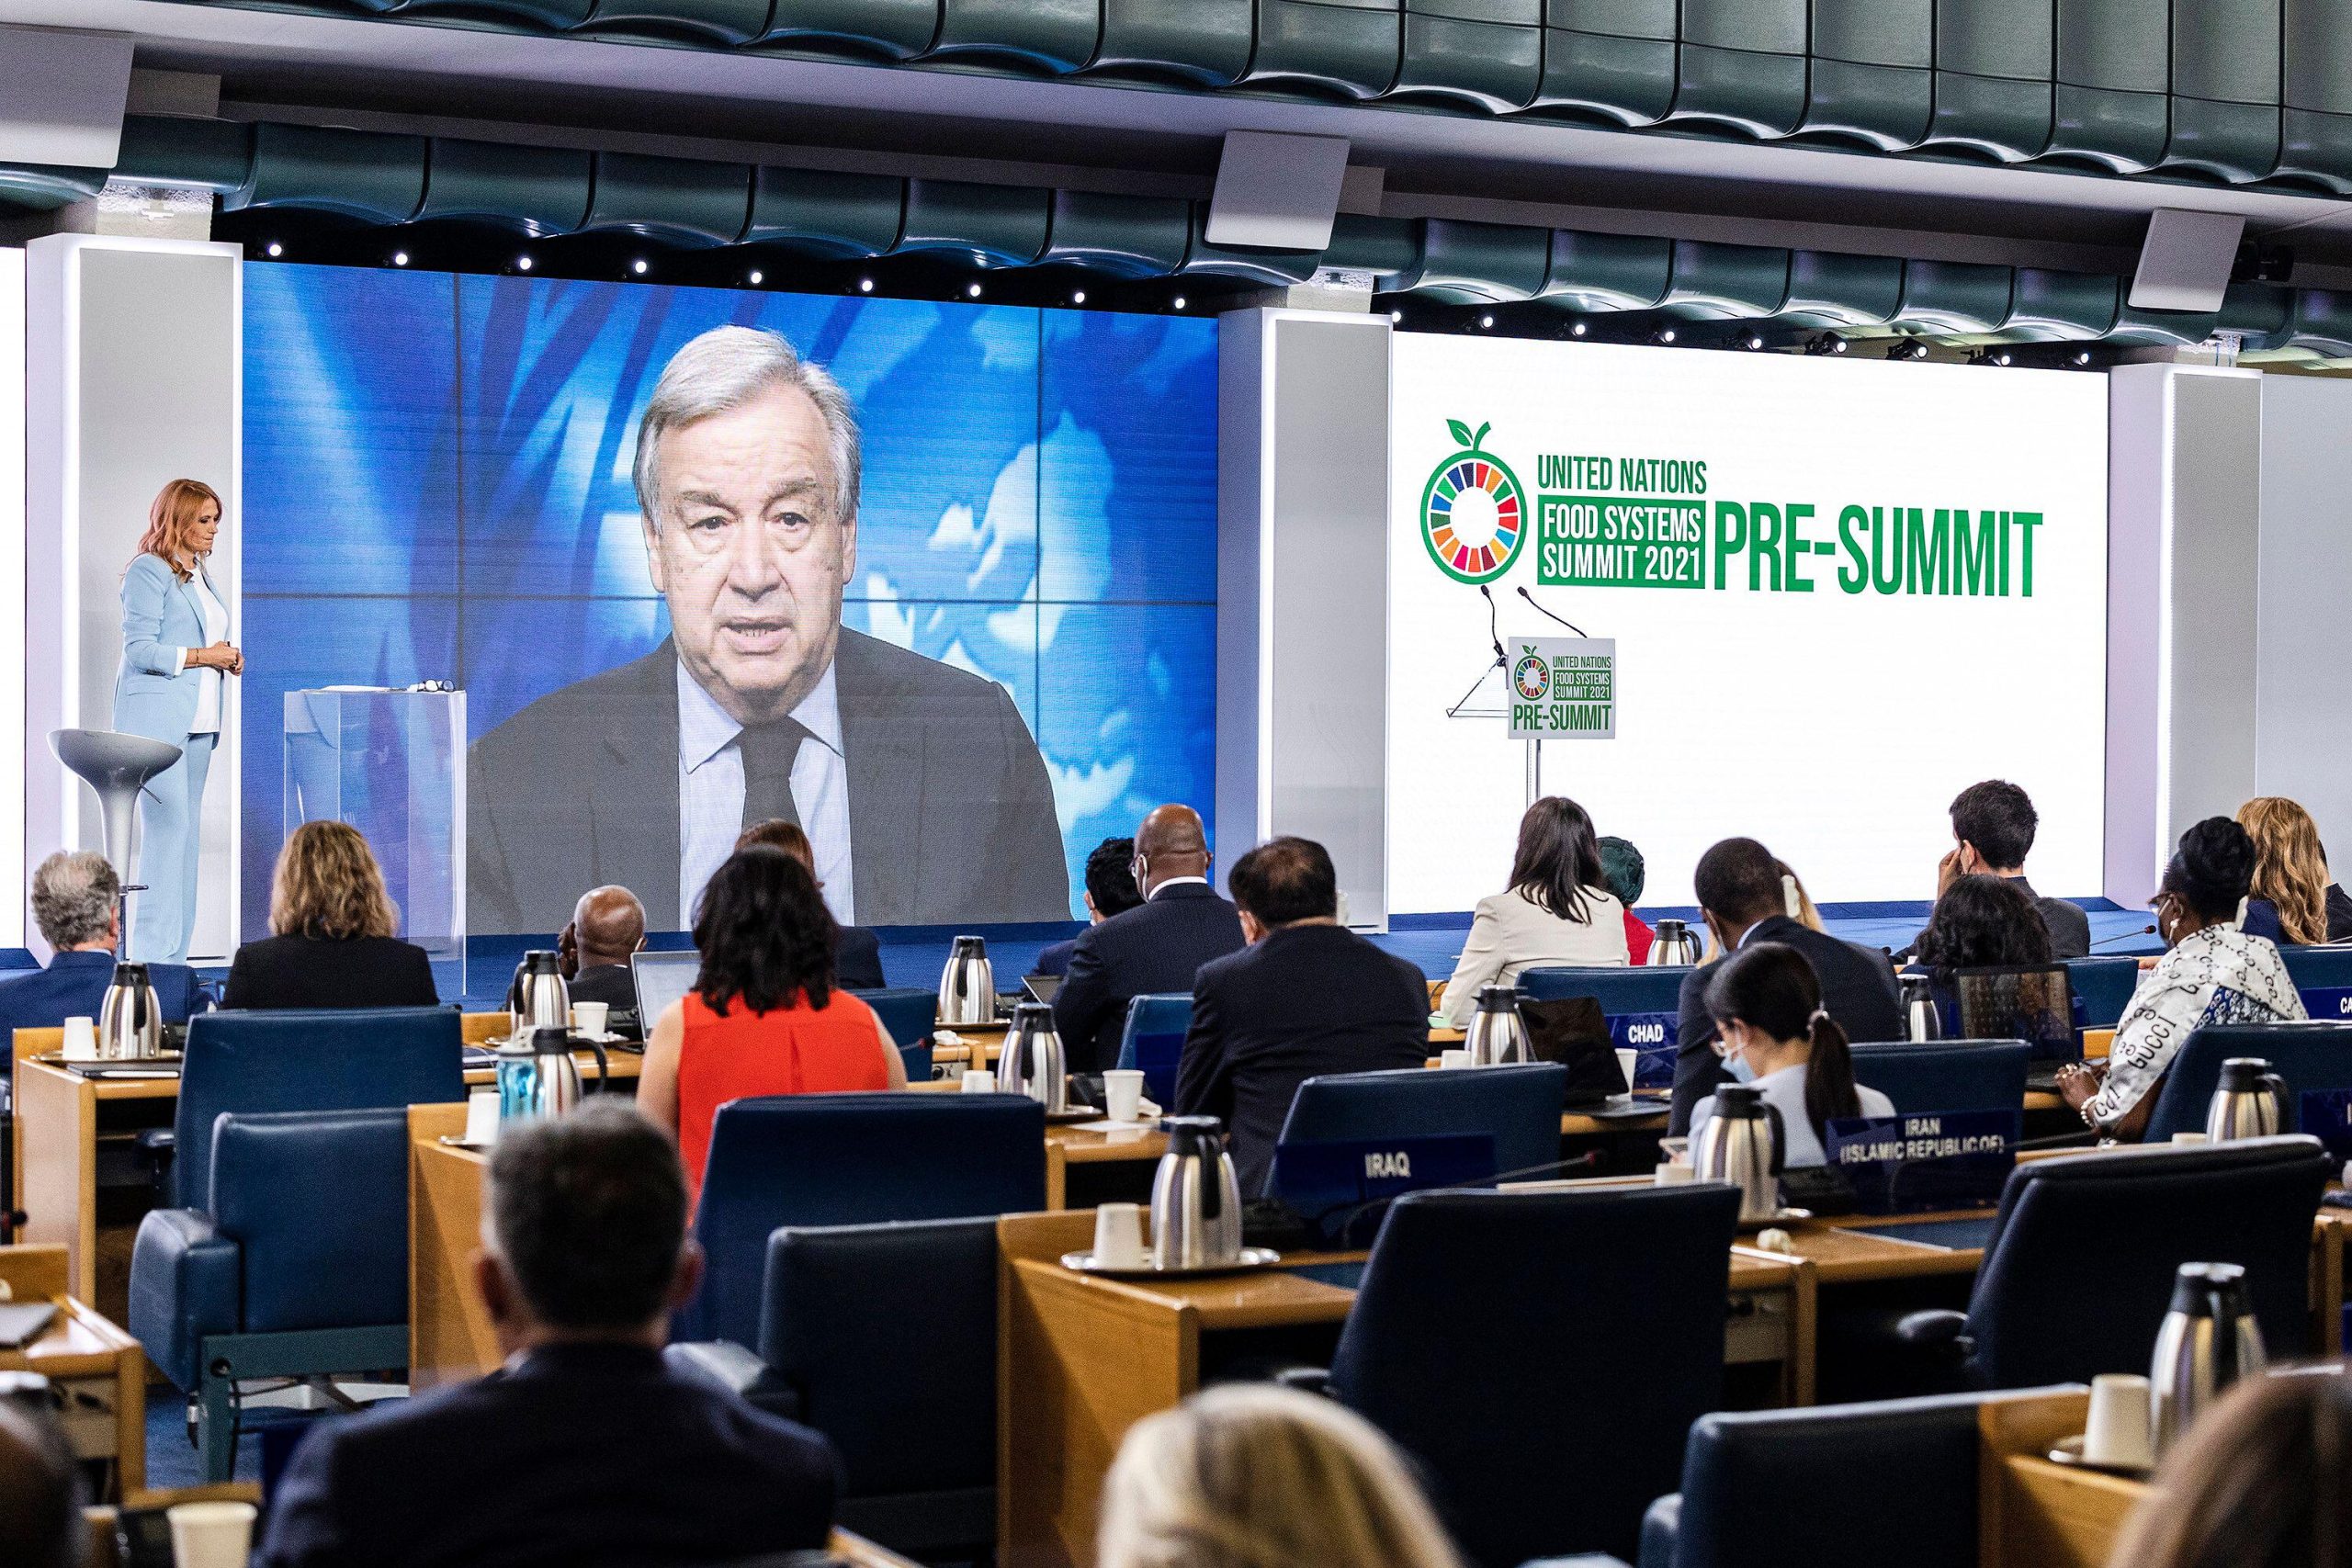 El secretario general de la ONU, António Guterres, se dirige a los delegados en un evento previo a la reciente Cumbre sobre Sistemas Alimentarios